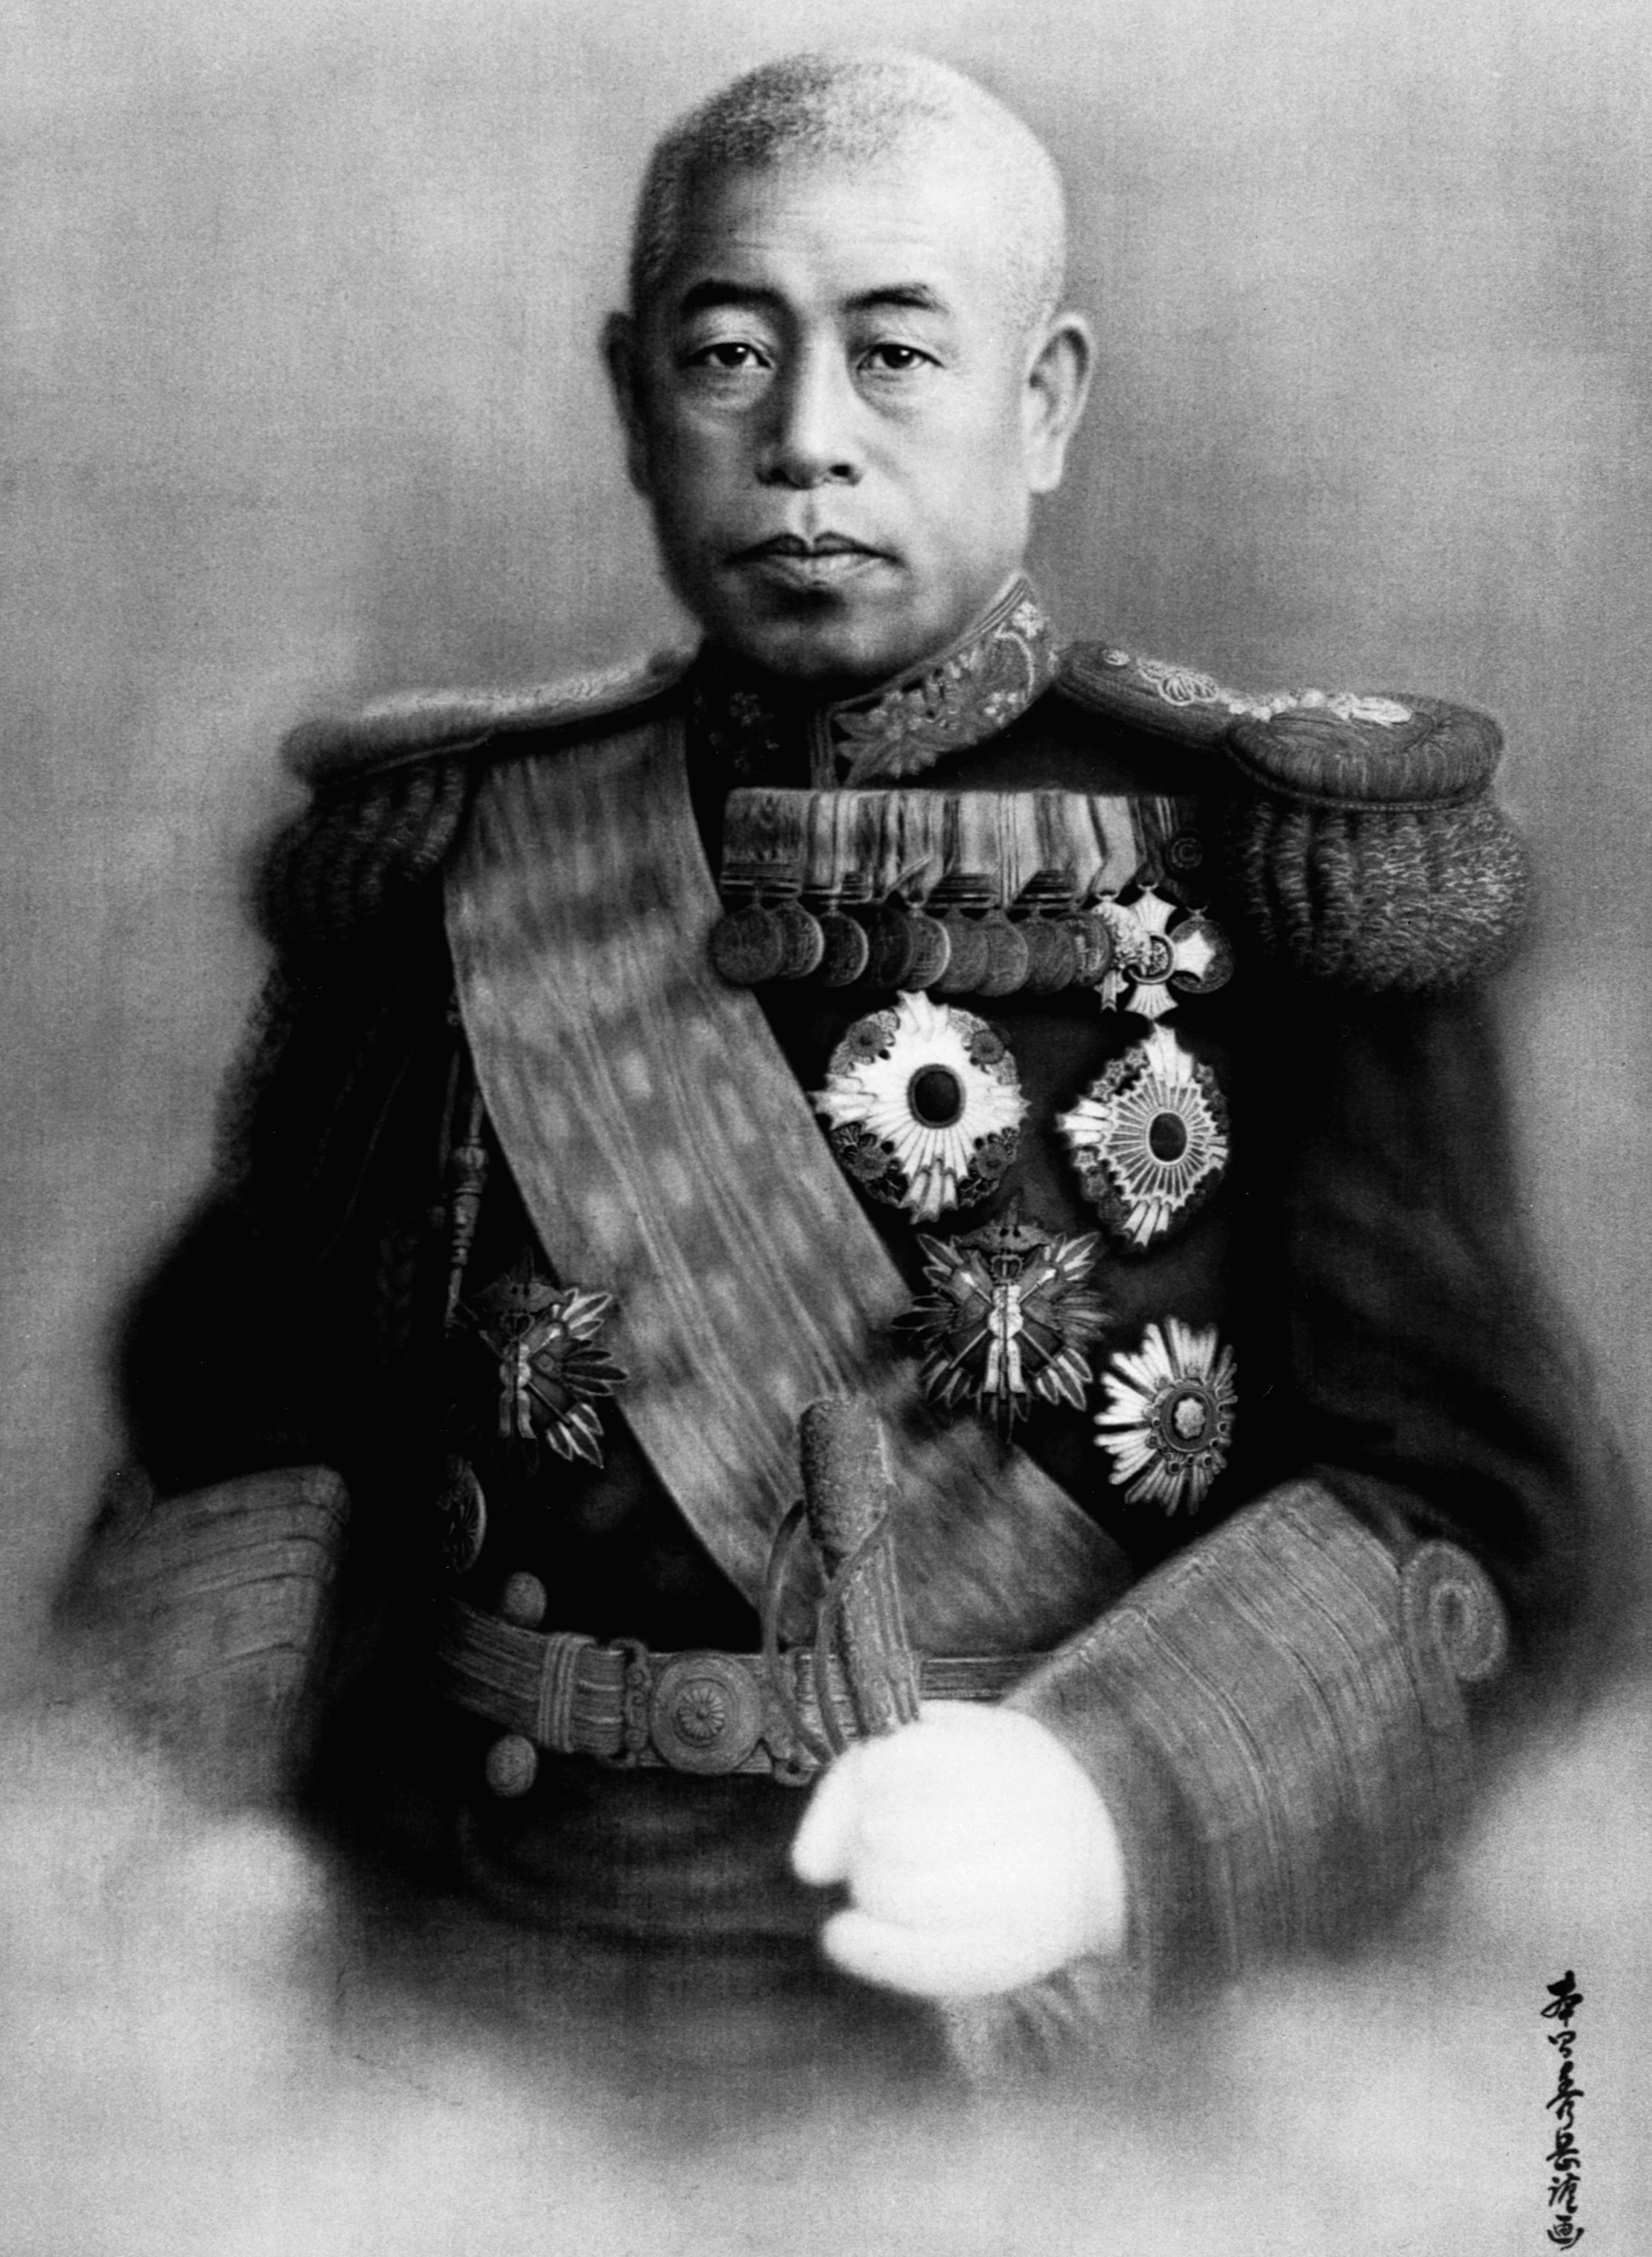 El almirante Isoroku Yamamoto fue el comandante de la flota imperial de Japón desde diciembre de 1941 hasta su muerte en abril de 1943 (© CORBIS/Corbis via Getty Images)